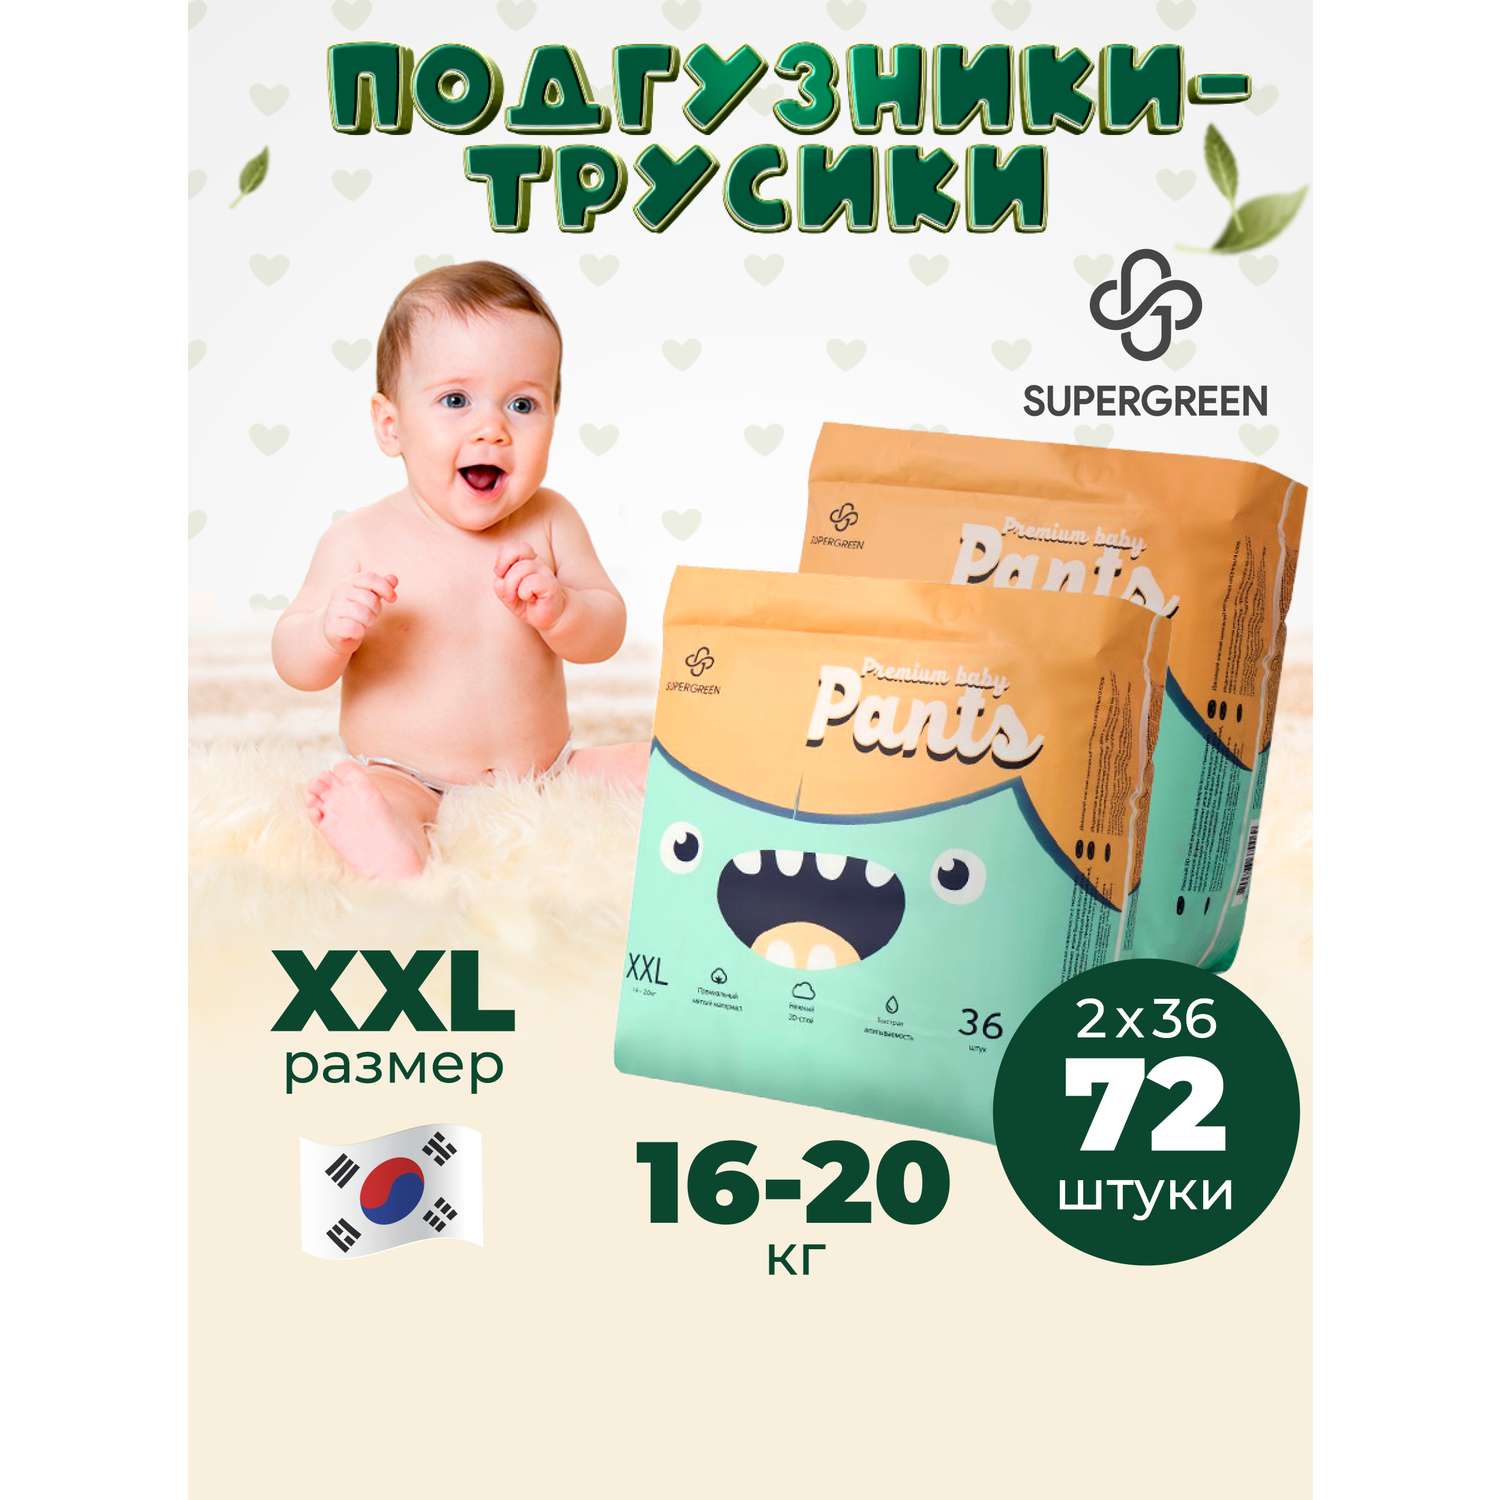 Трусики-подгузники SUPERGREEN Premium baby Pants ХХL размер 2 упаковки по 36 шт 16 -20 кг ультрамягкие - фото 1